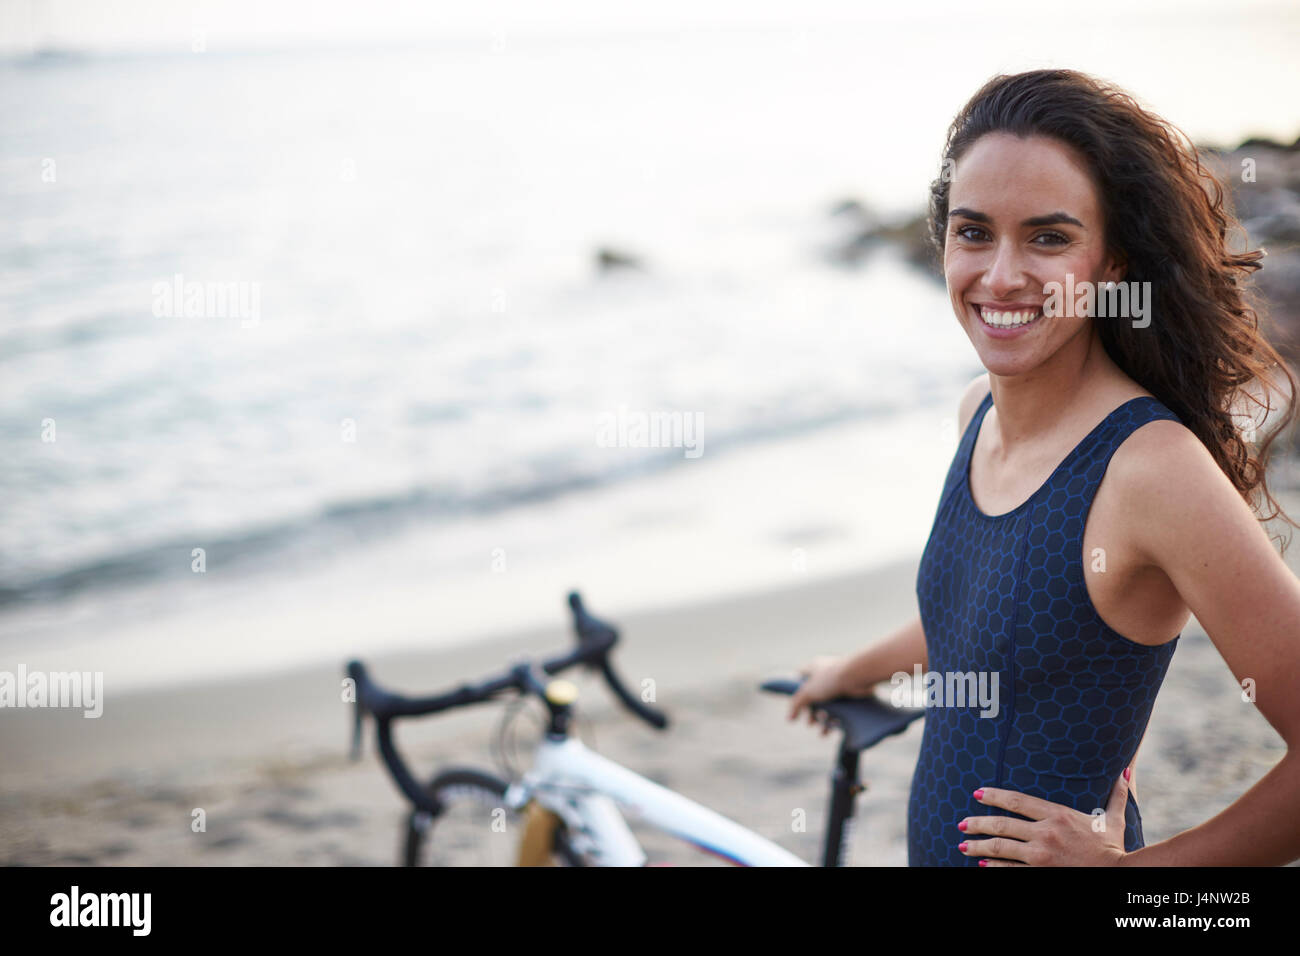 Un triatleta femmina sulla spiaggia che indossa la sua tuta triathlon Foto Stock